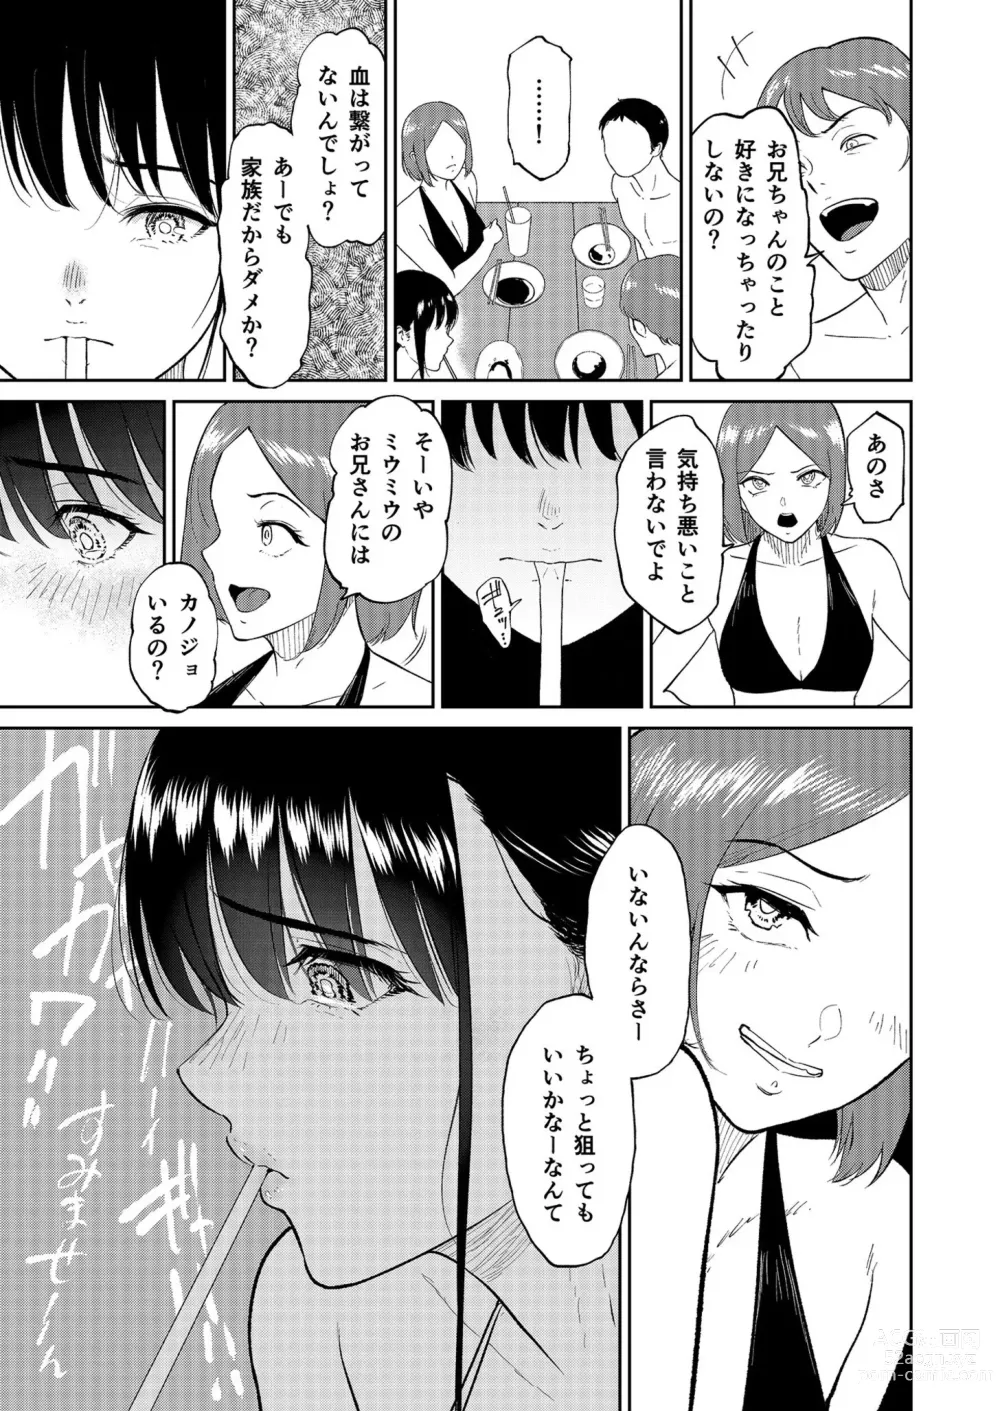 Page 17 of manga Iinarikko 4